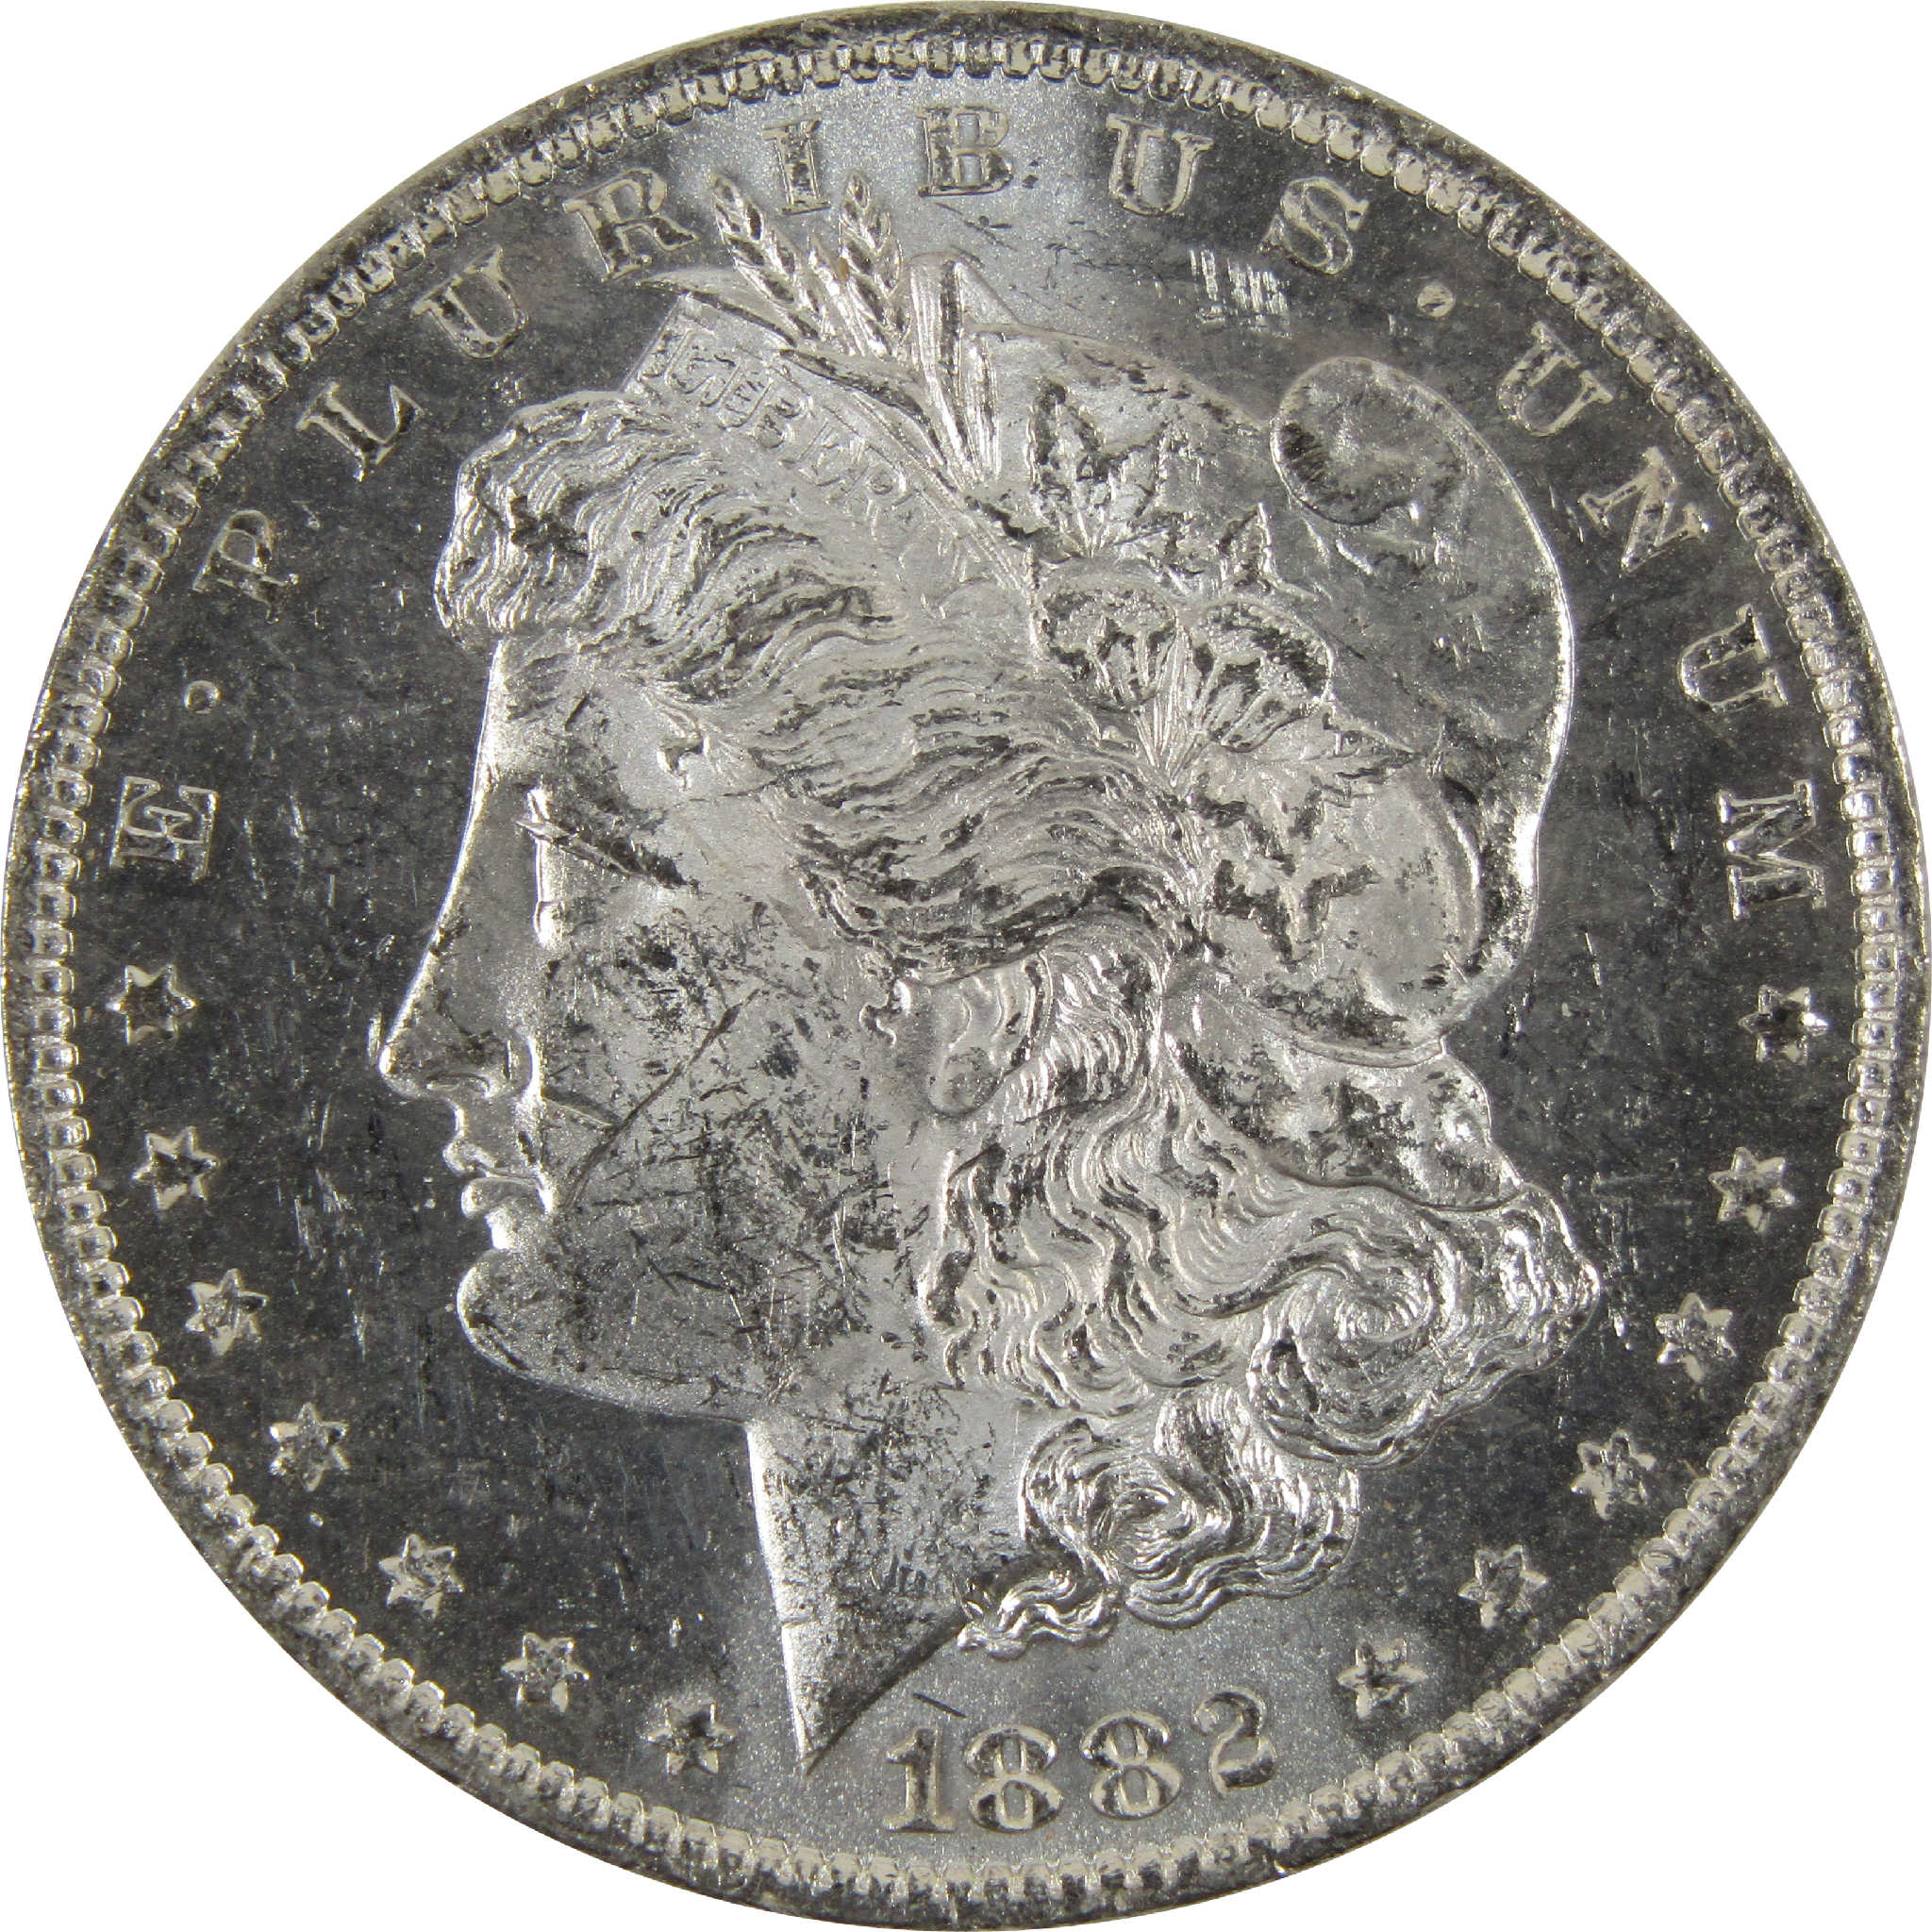 1882 O Morgan Dollar BU Uncirculated 90% Silver $1 Coin SKU:I8924 - Morgan coin - Morgan silver dollar - Morgan silver dollar for sale - Profile Coins &amp; Collectibles